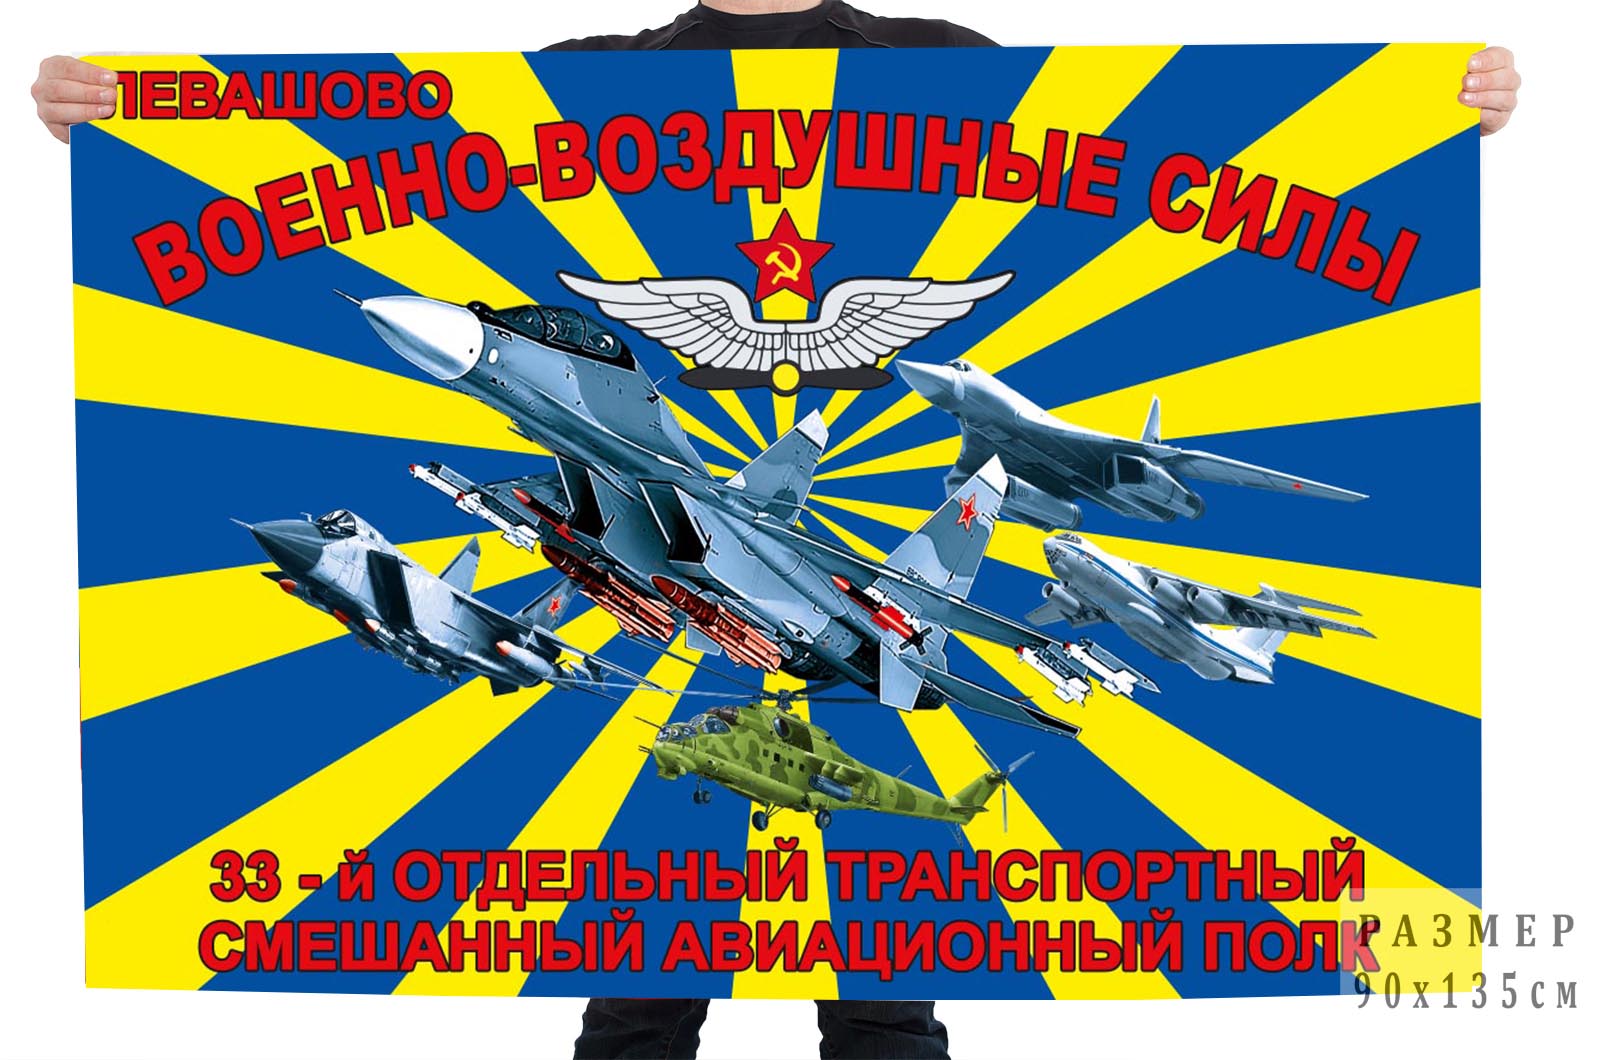 Недорогой флаг 33-го отдельного транспортного смешанного авиационного полка Левашово